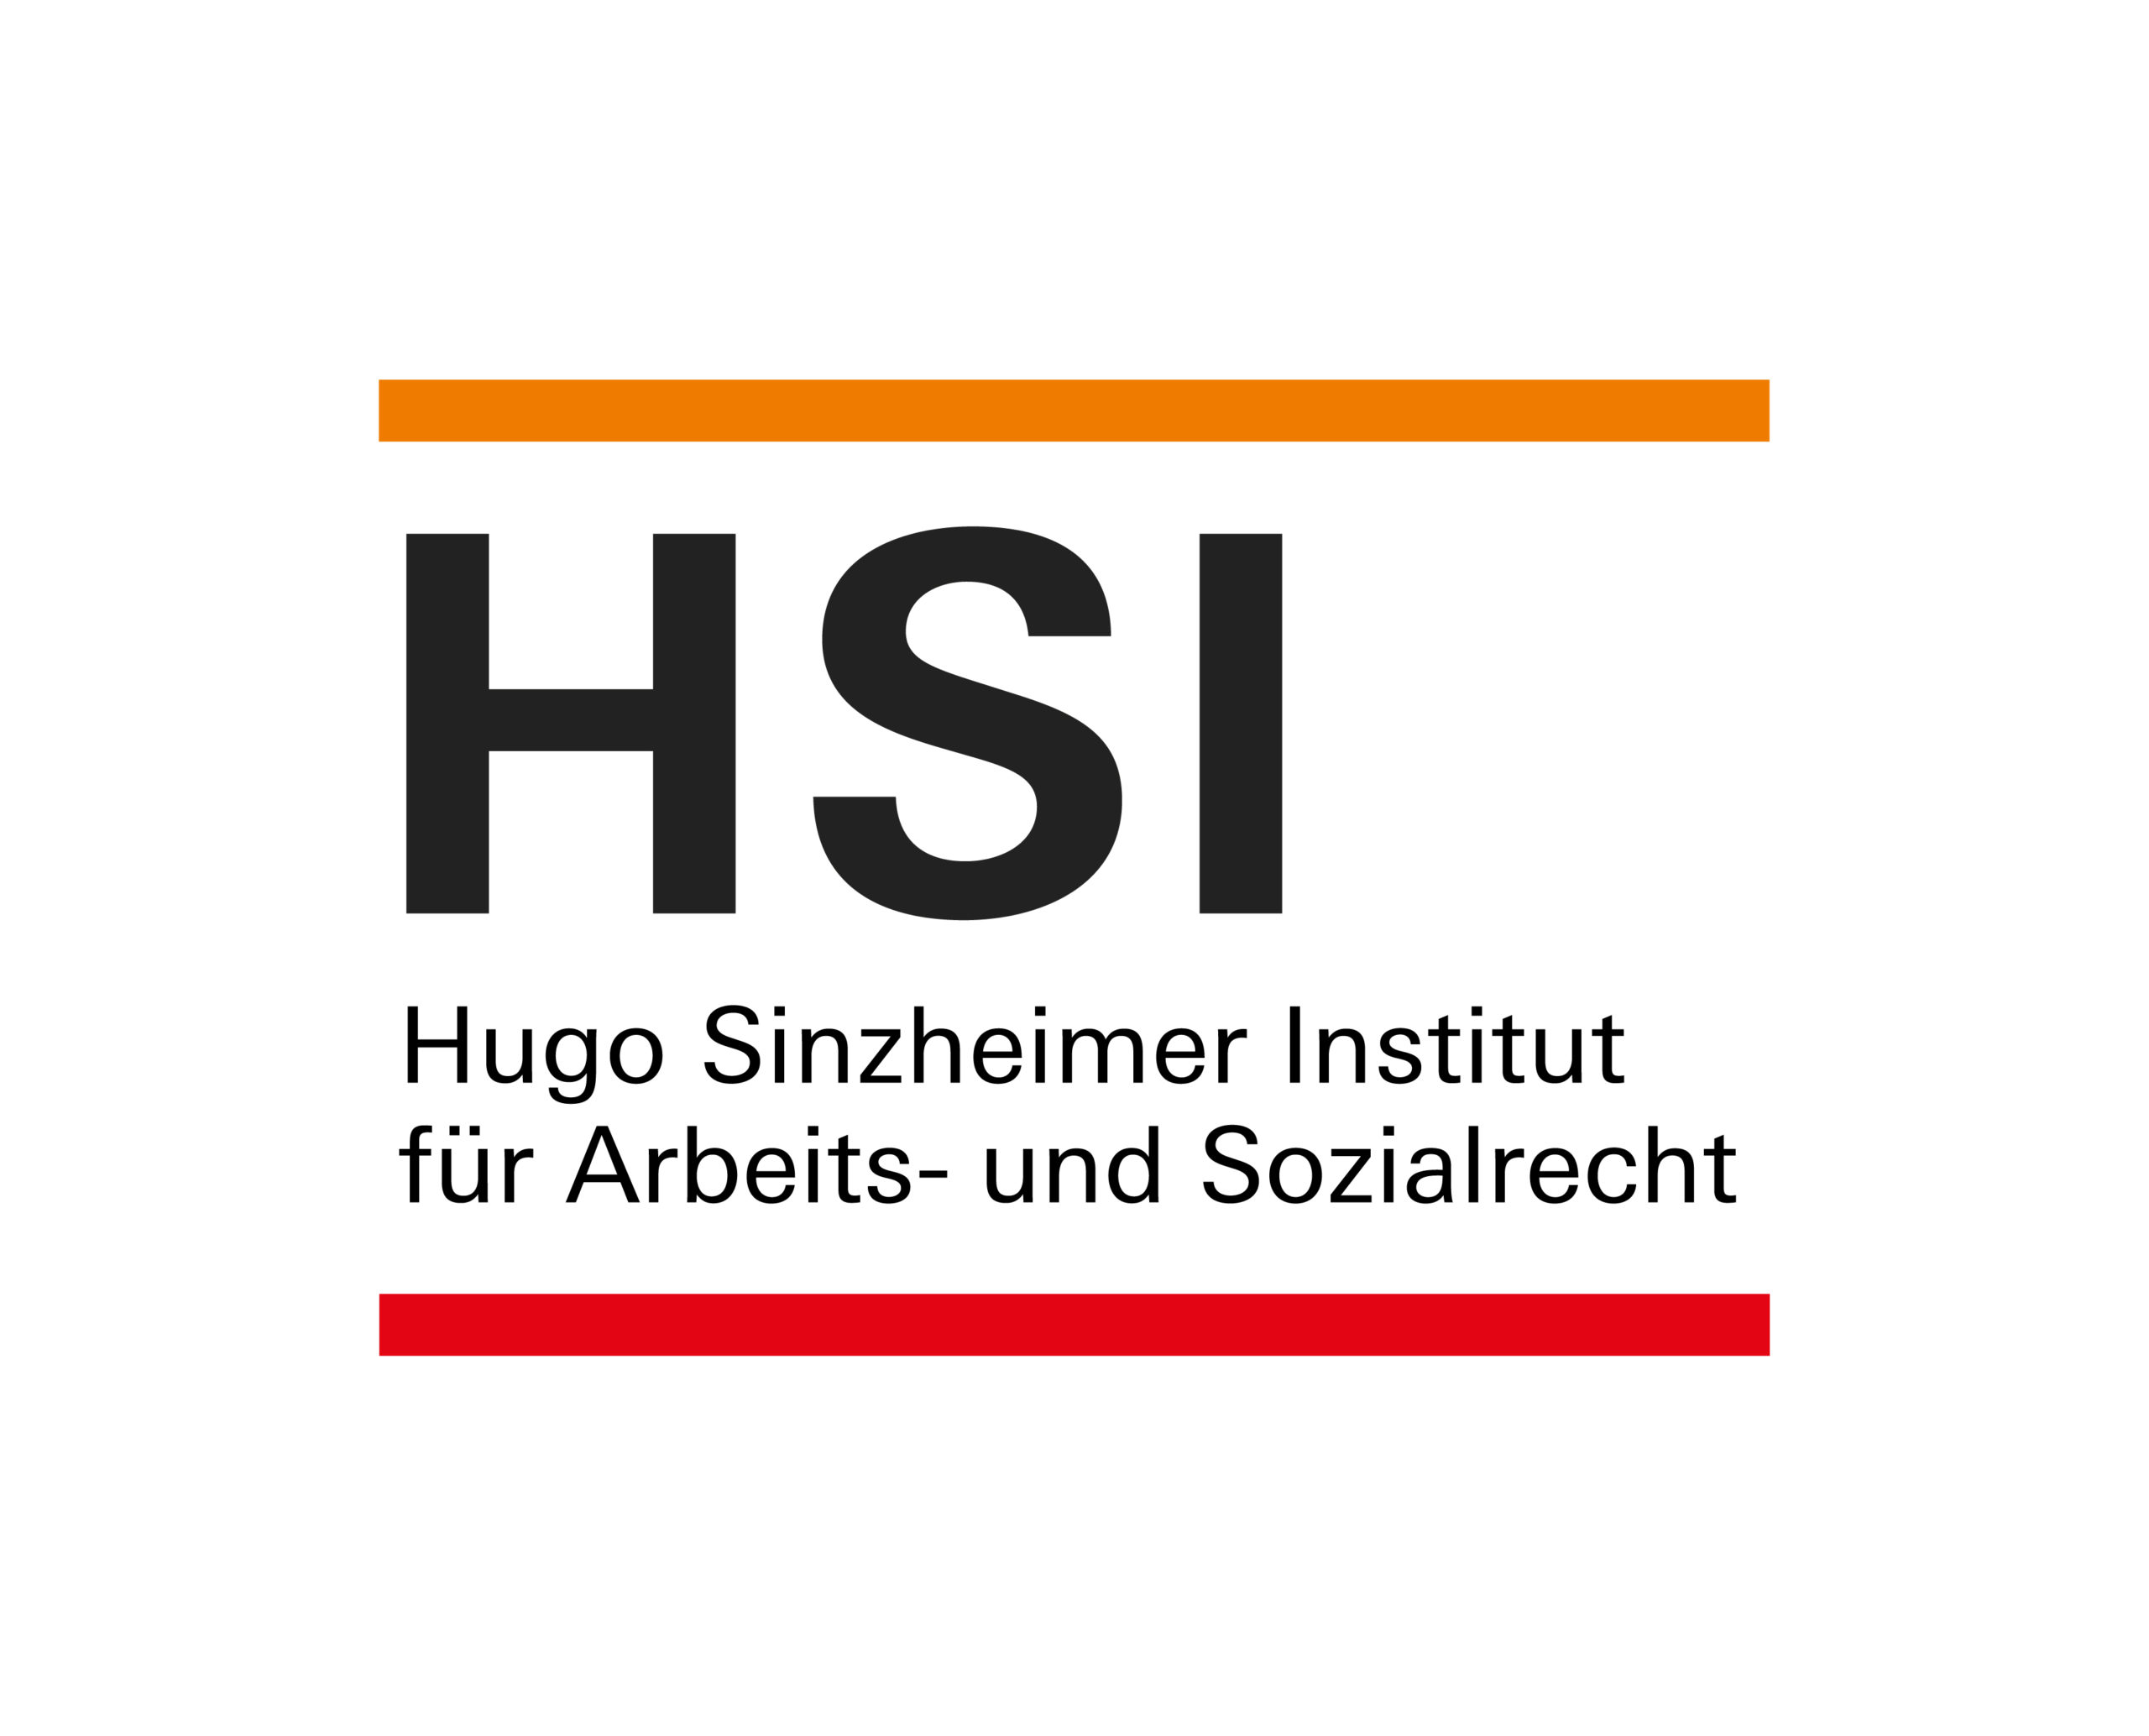 Hugo Sinzheimer Institut für Arbeits- und Sozialrecht (HSI)